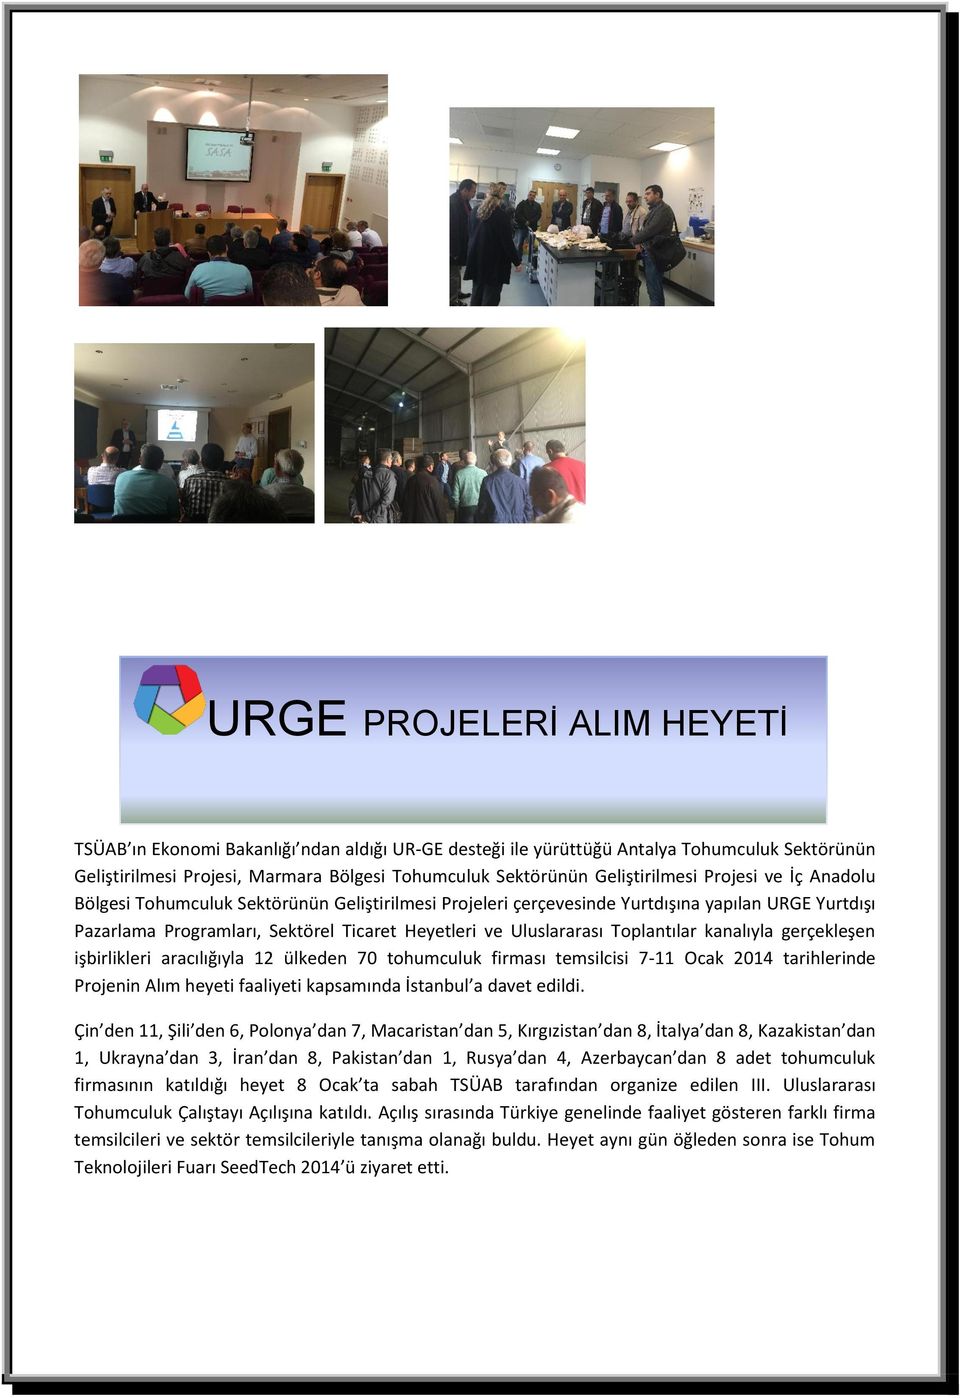 Uluslararası Toplantılar kanalıyla gerçekleşen işbirlikleri aracılığıyla 12 ülkeden 70 tohumculuk firması temsilcisi 7-11 Ocak 2014 tarihlerinde Projenin Alım heyeti faaliyeti kapsamında İstanbul a